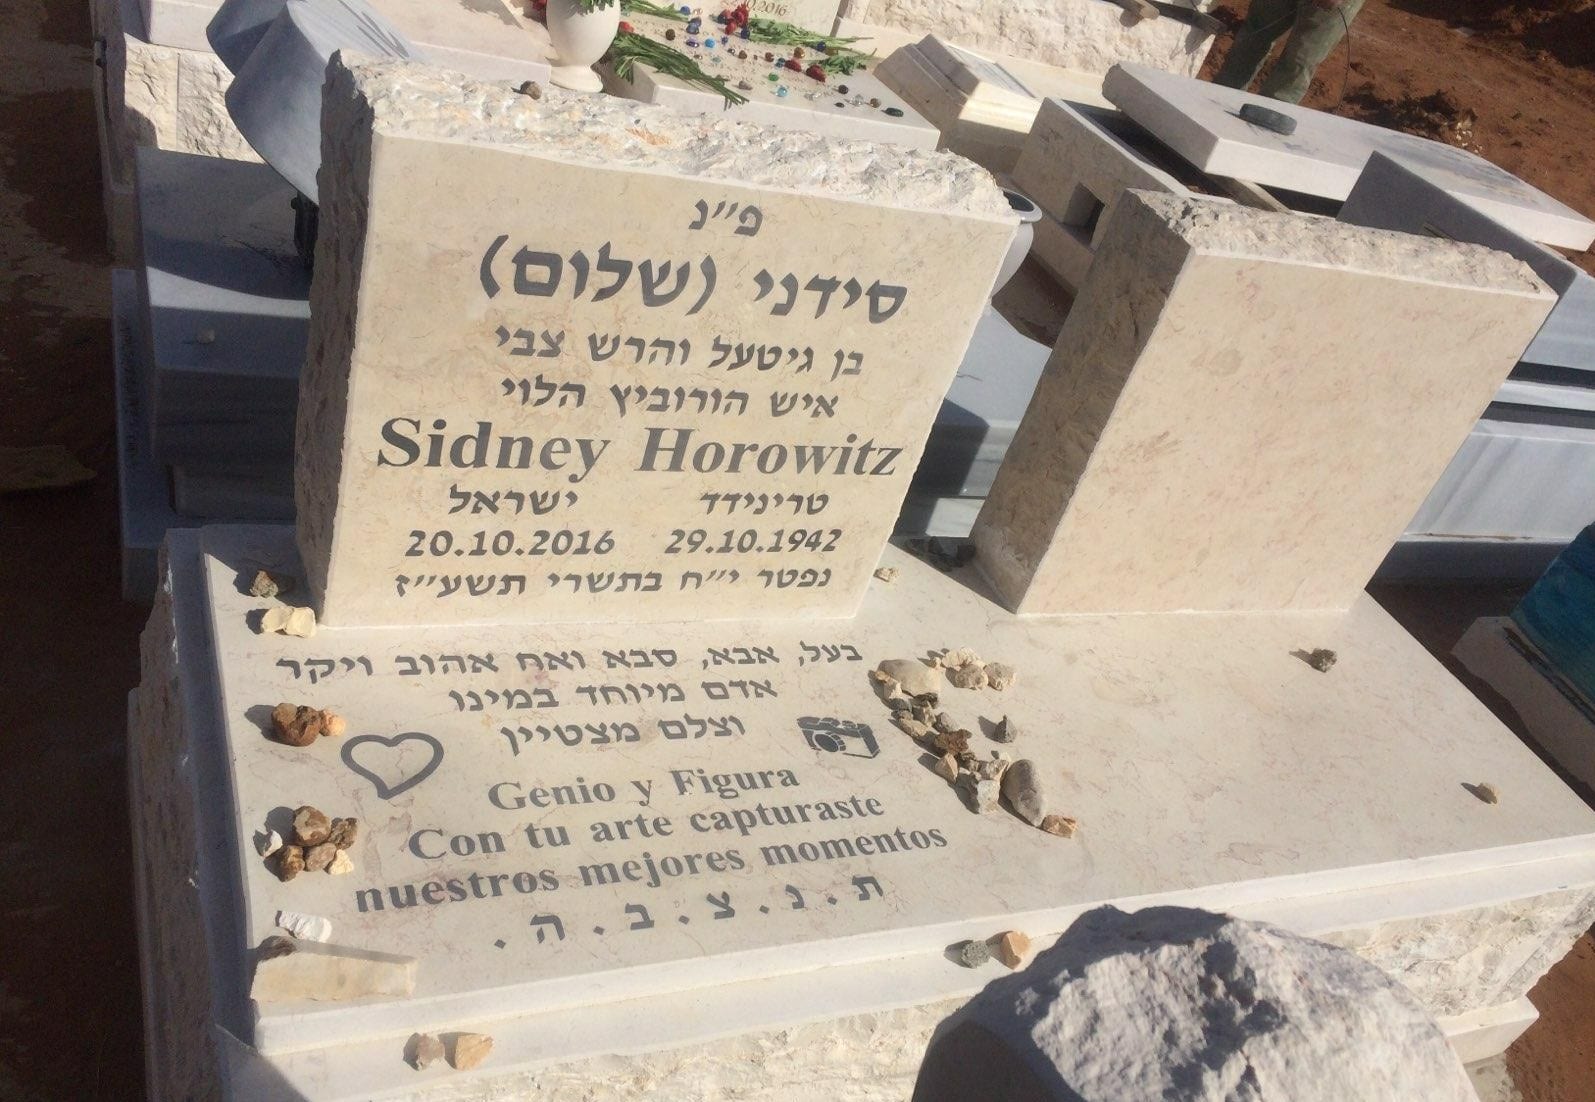 Das Grab von Daniels Vater in Kfar Saba, Israel, mit Inschriften auf Hebräisch und Spanisch